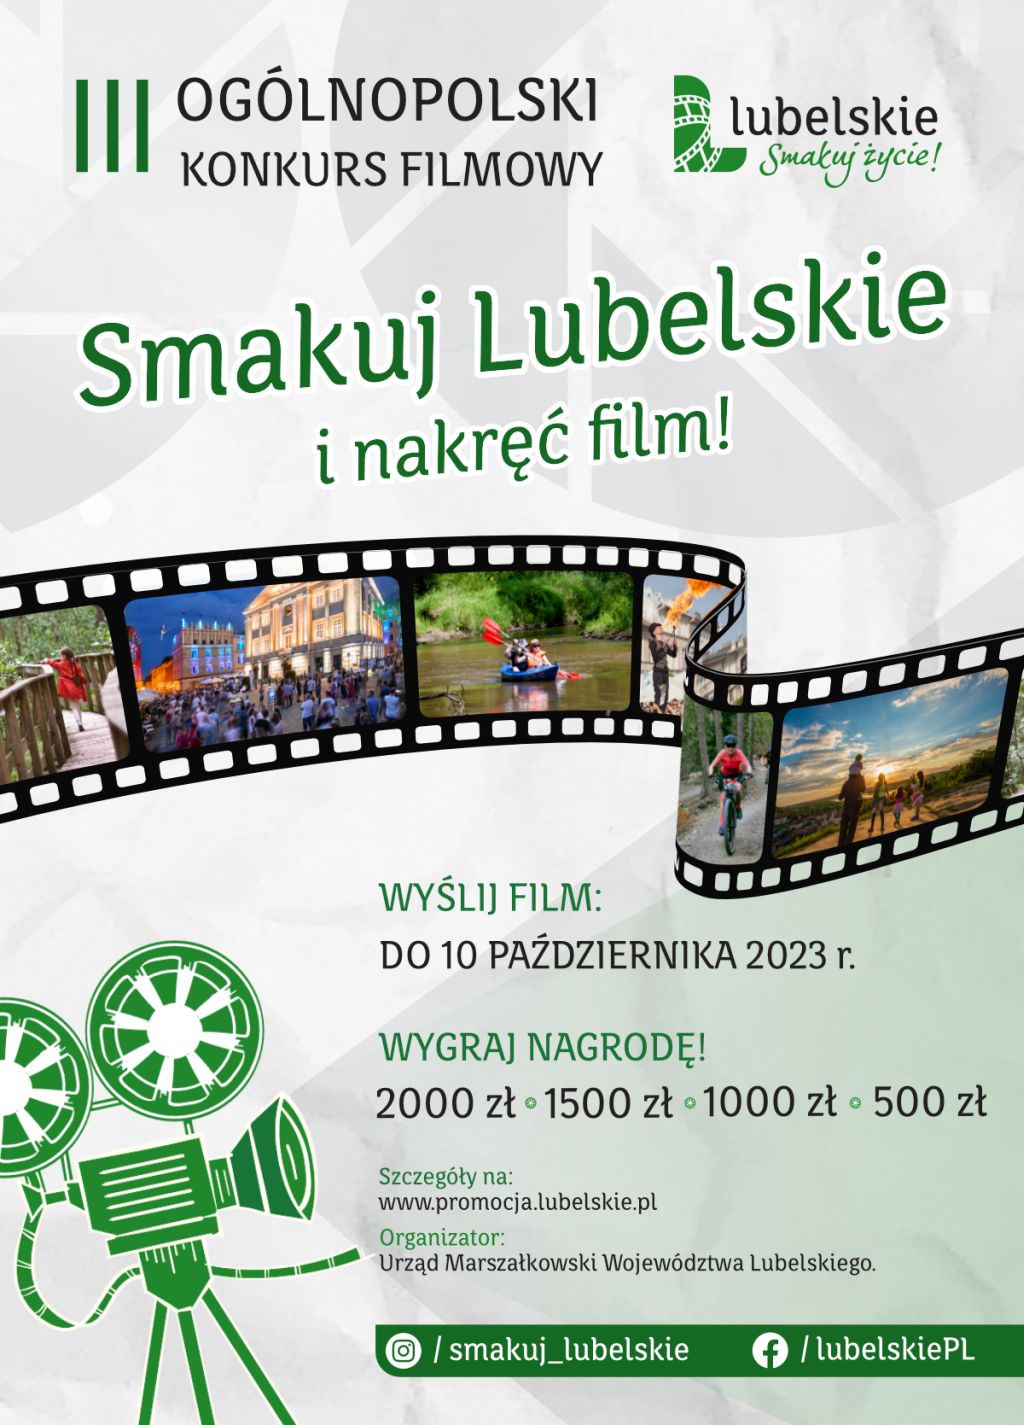 III Ogólnopolski Konkurs Filmowy „Lubelskie. Smakuj życie!”